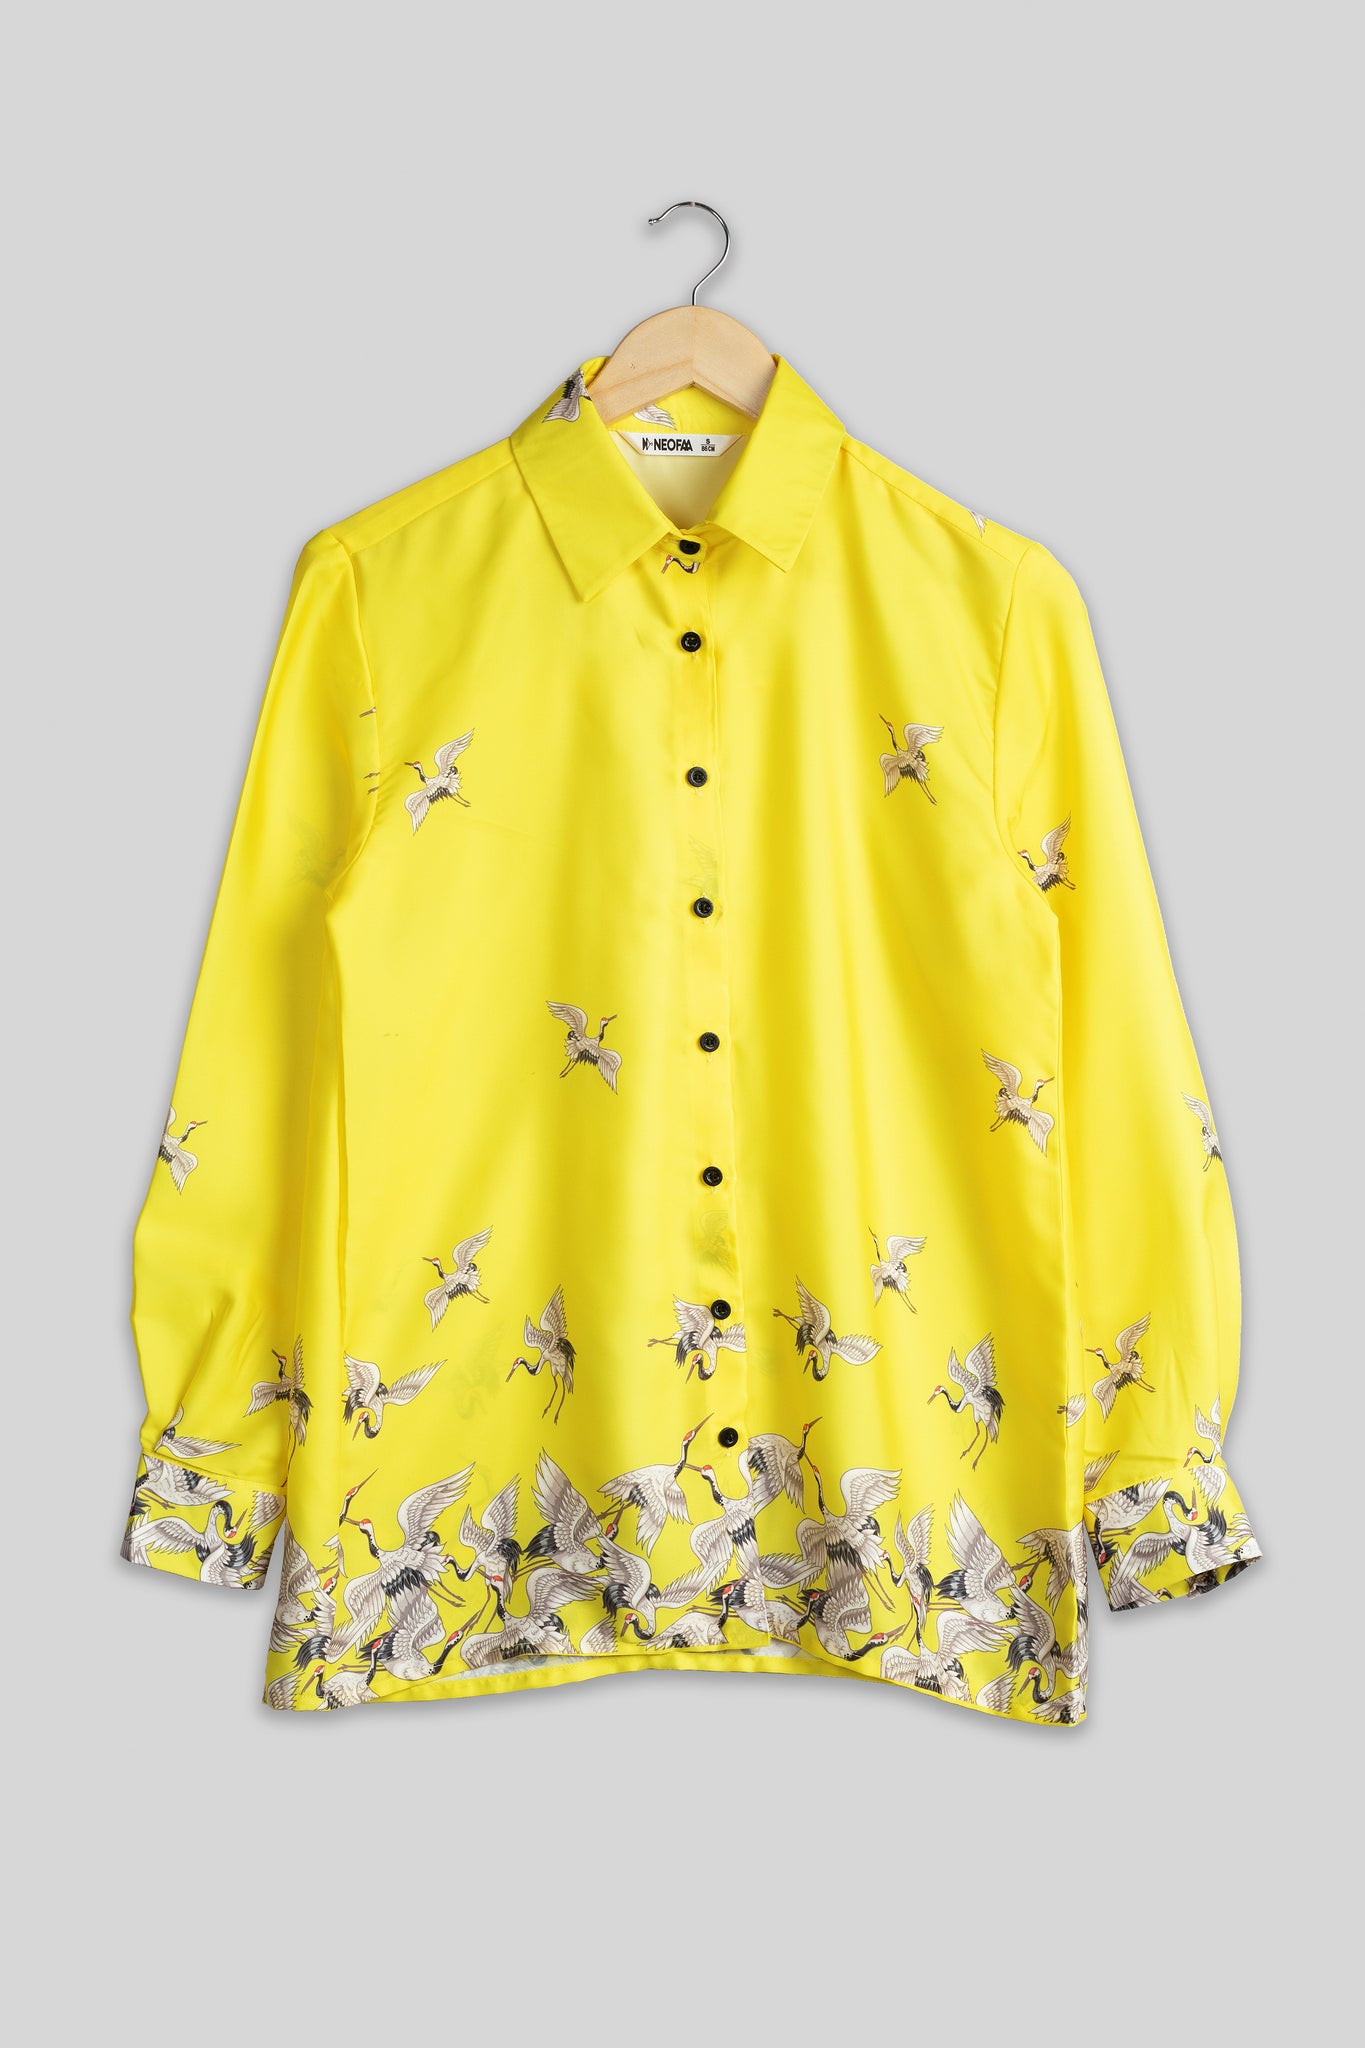 Bestselling Designer Bird Shirt For Women